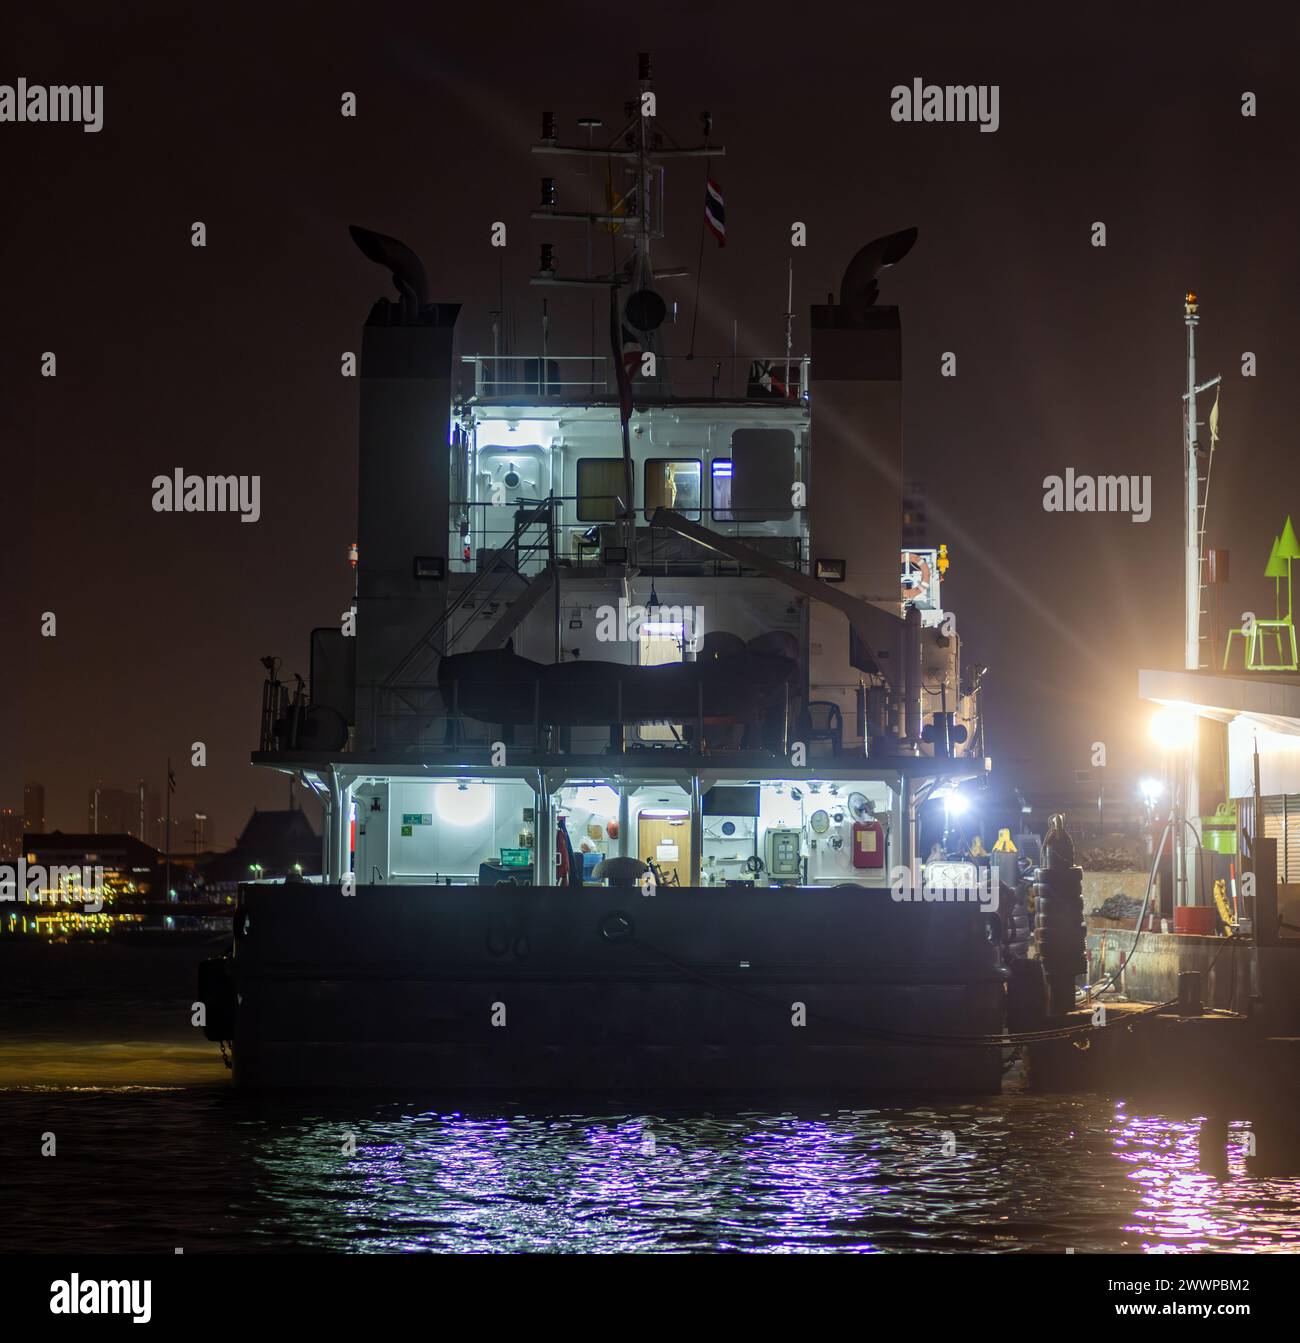 Tugboat moored at shore at night Stock Photo